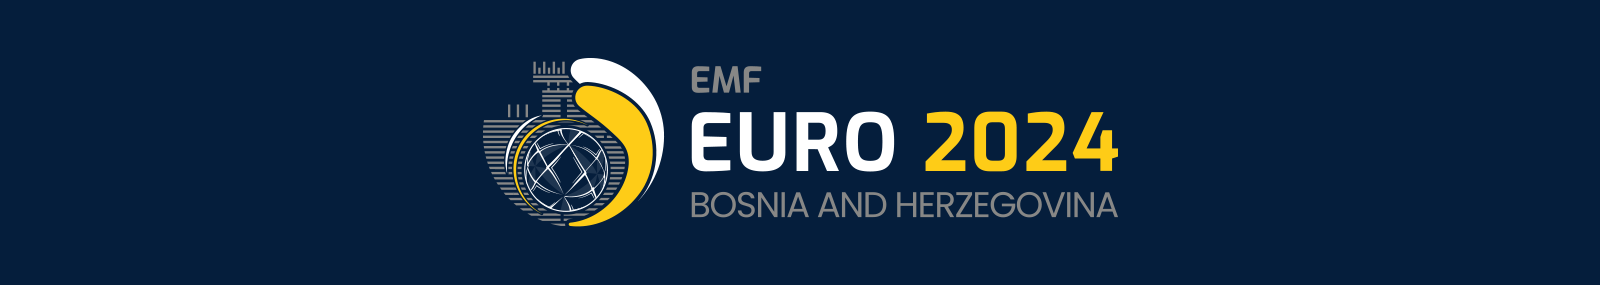 EMF EURO 2024